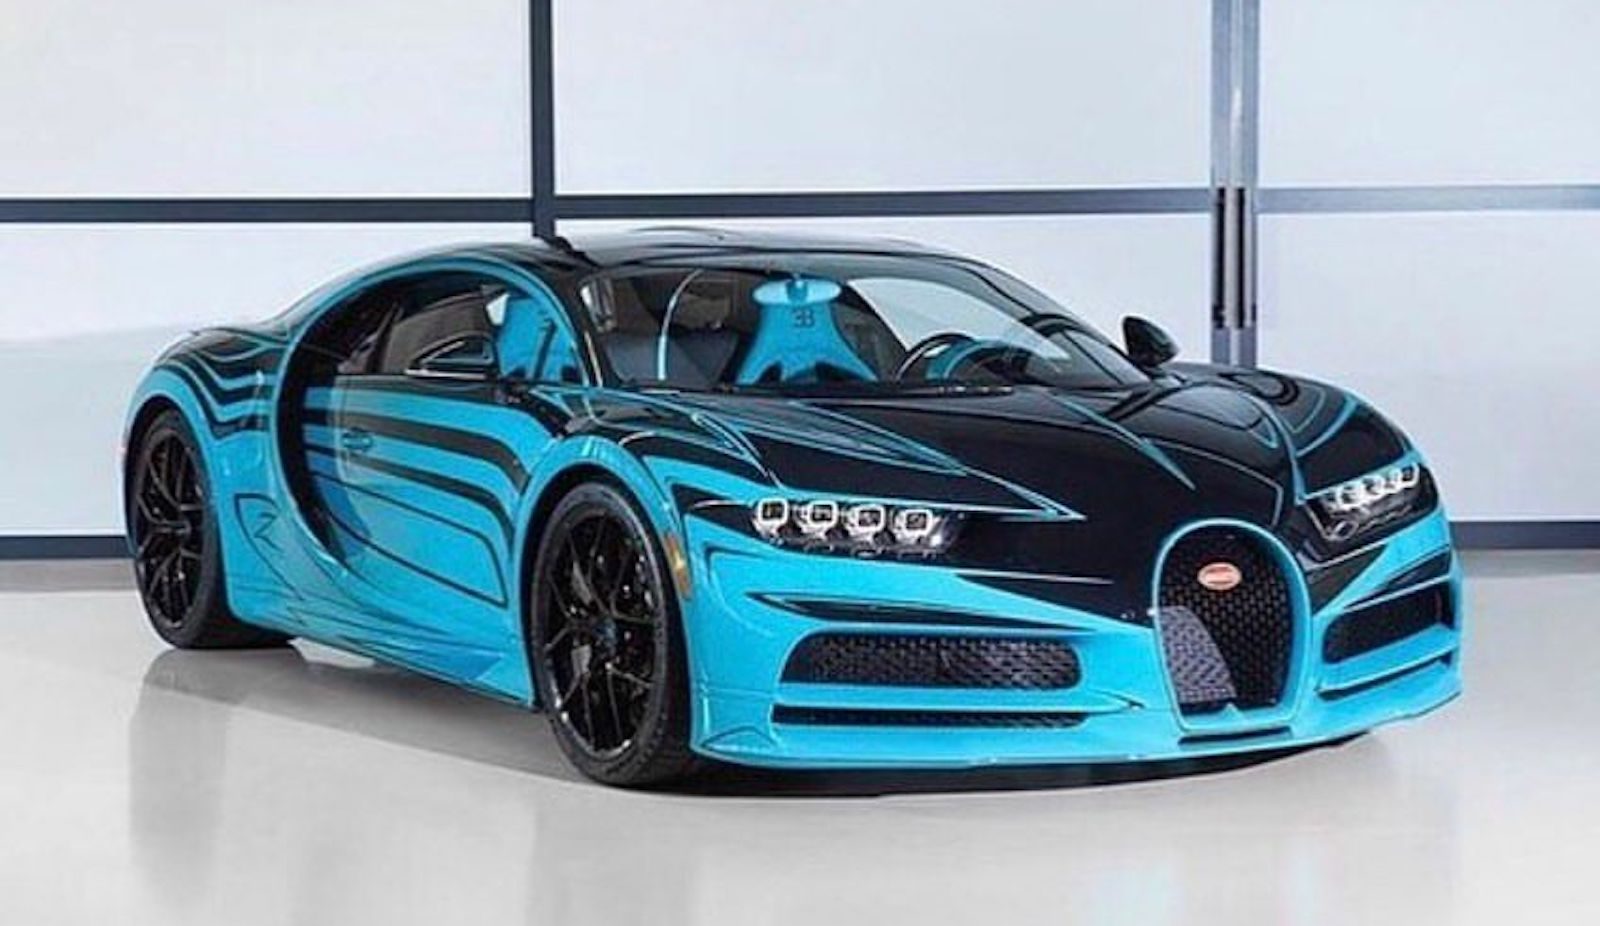 Bugatti Sur Mesure